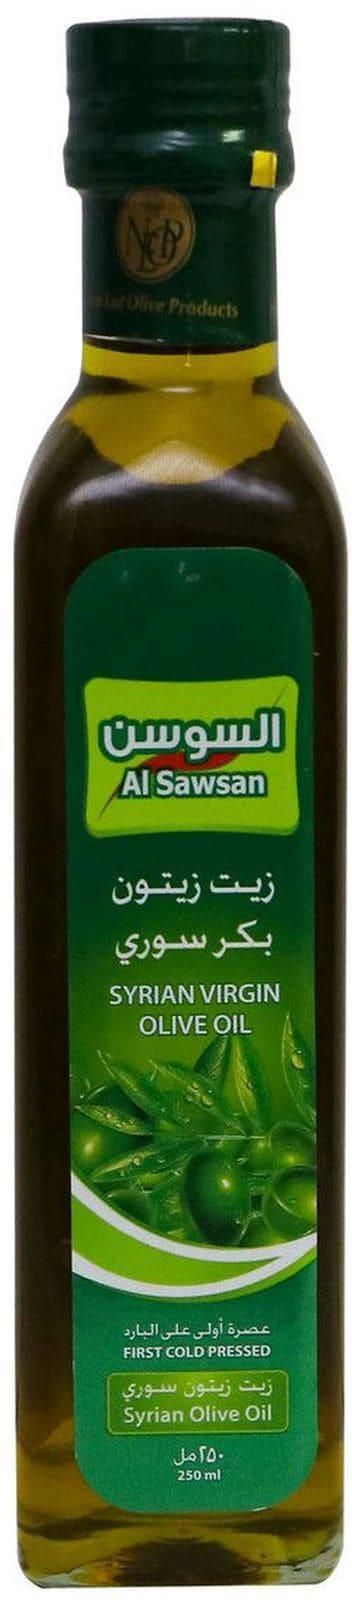 Al Sawsan virgin olive oil 250ml